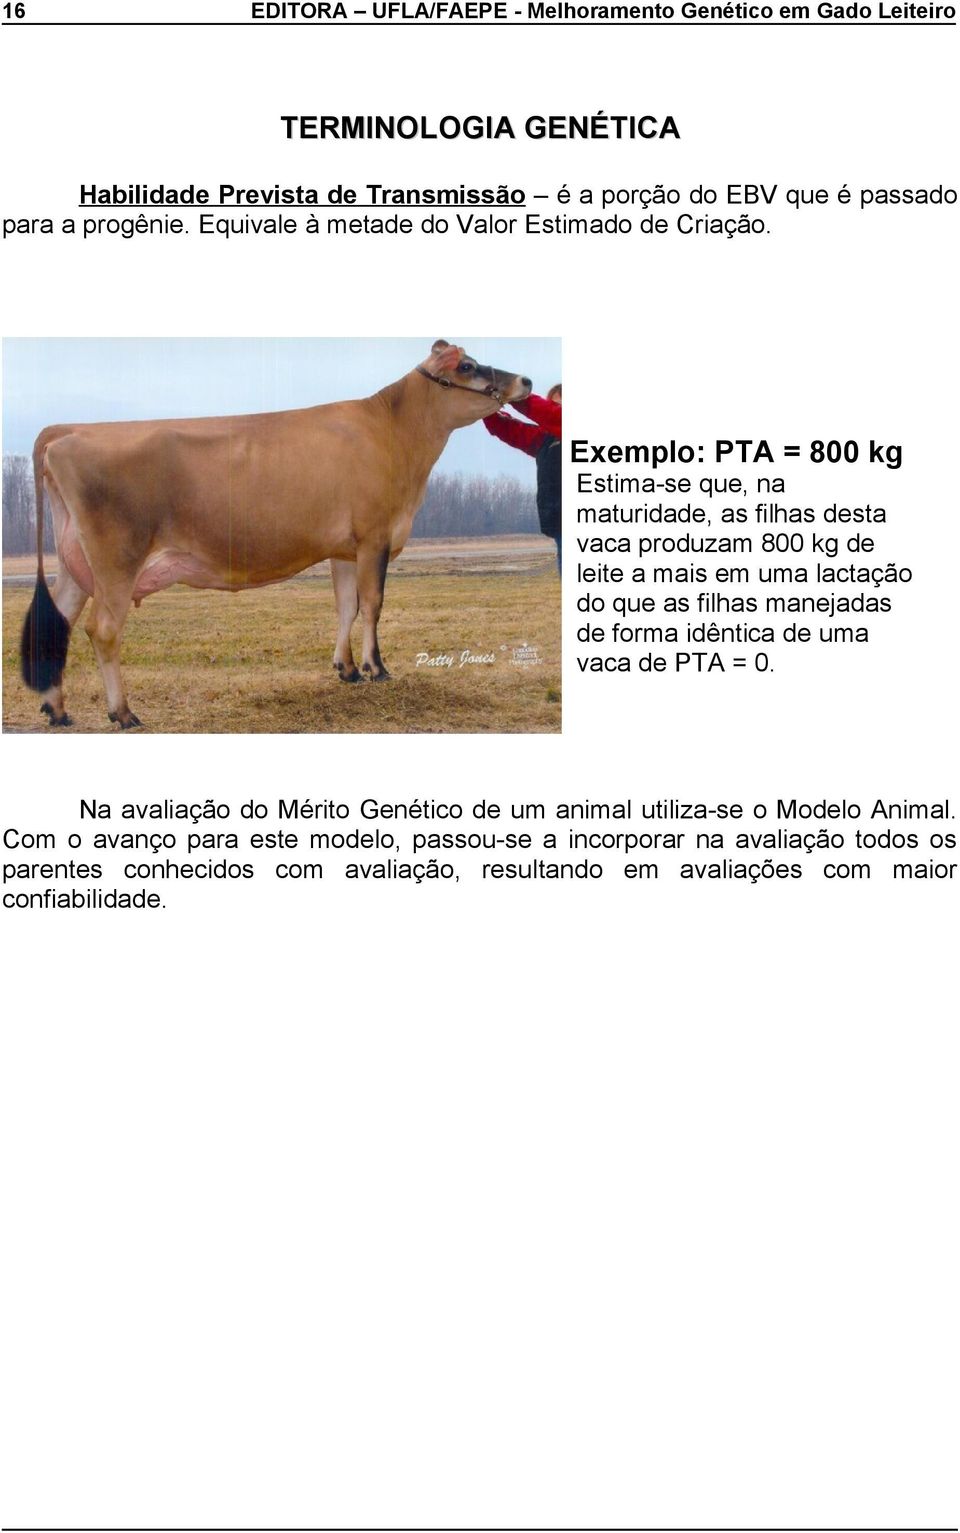 Exemplo: PTA = 800 kg Estima-se que, na maturidade, as filhas desta vaca produzam 800 kg de leite a mais em uma lactação do que as filhas manejadas de forma